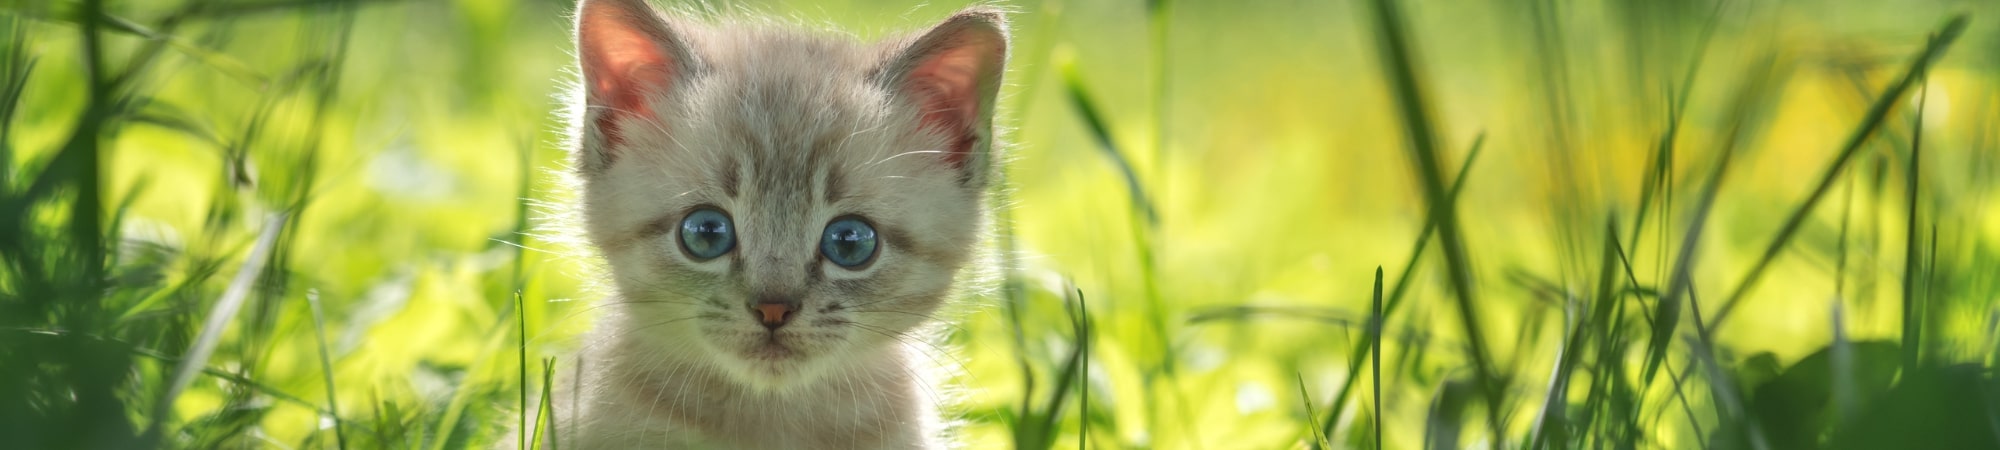 Chaton yeux bleus dans l'herbe